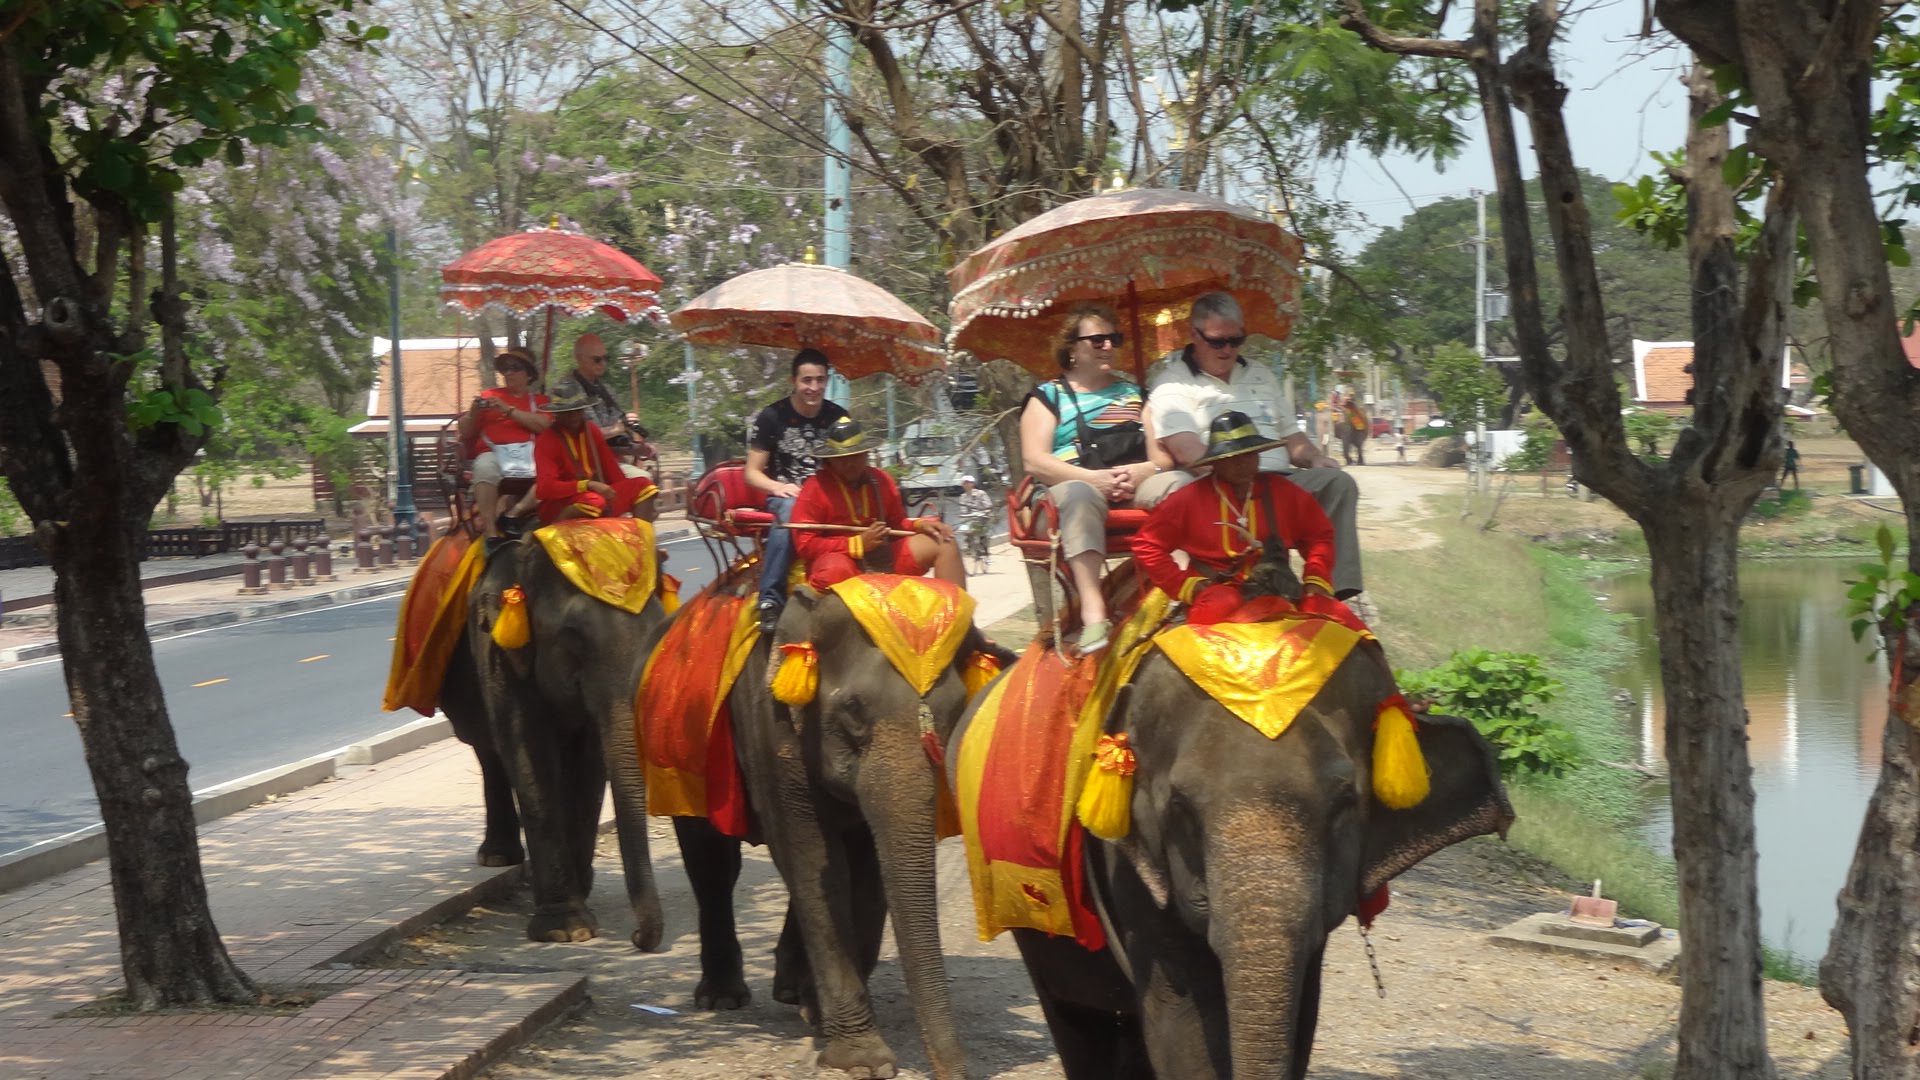 Ayutthaya, Thailand Elephant Ride 02-26-2014 - YouTube